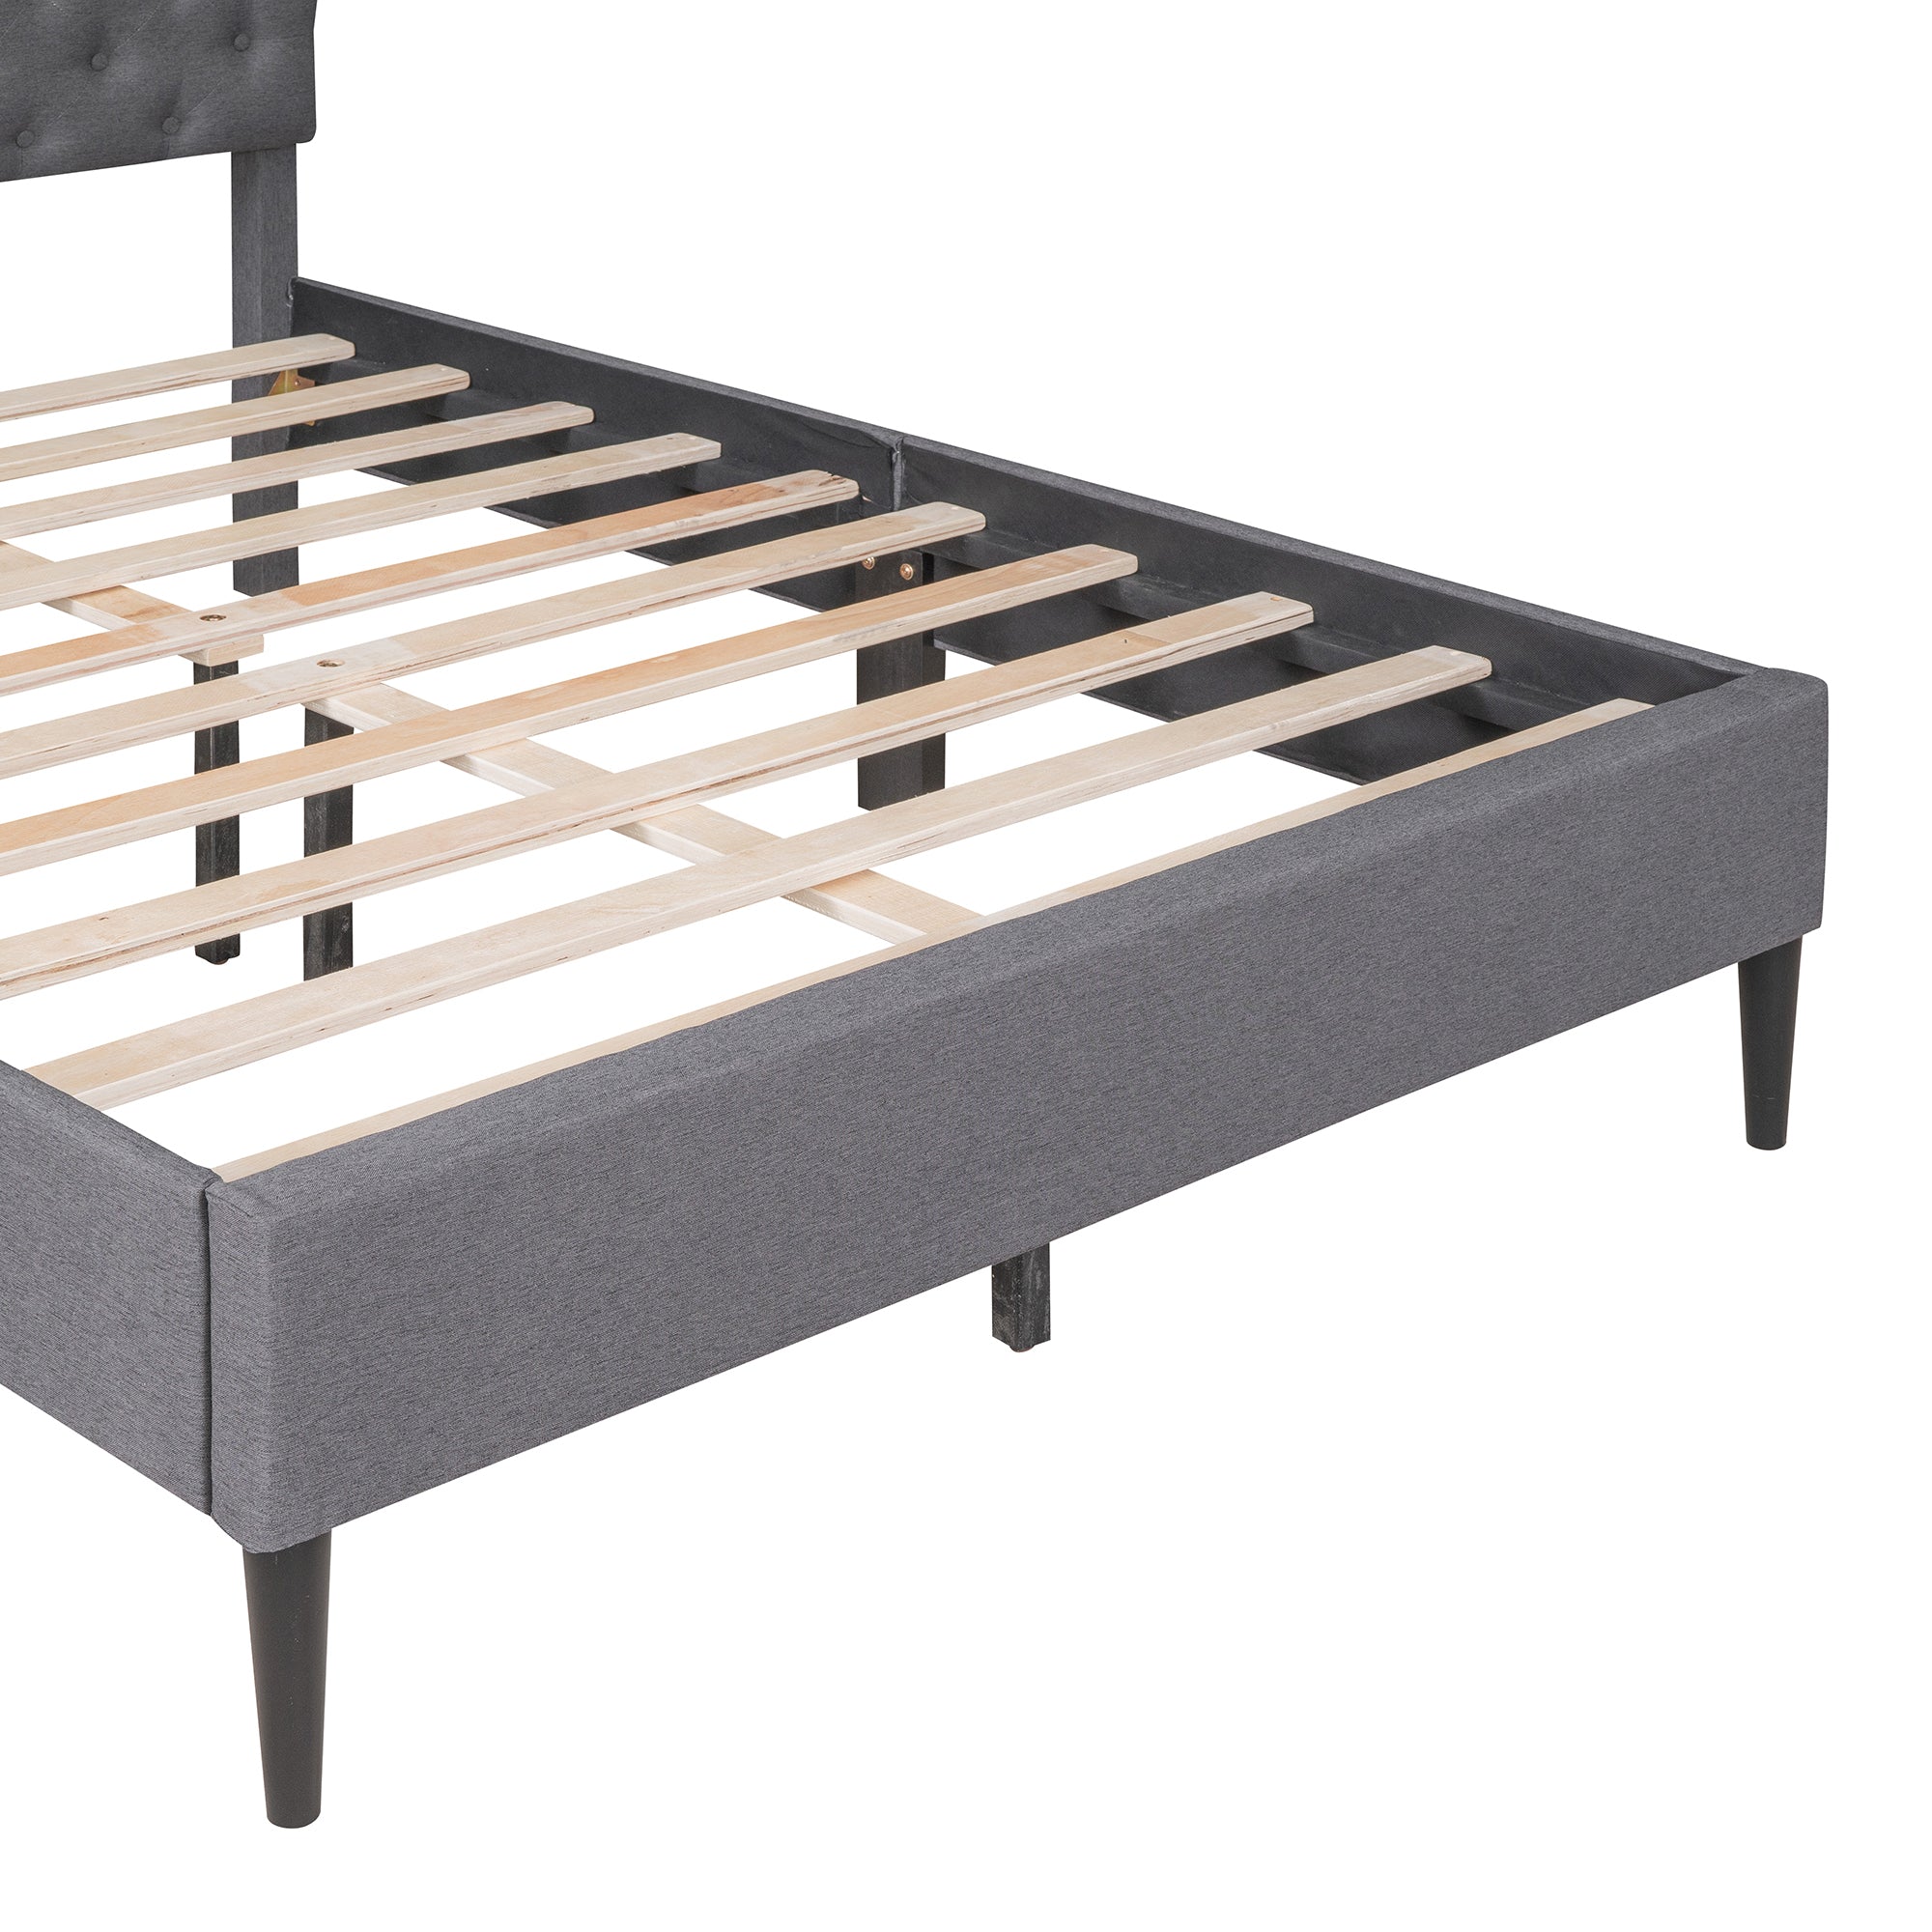 Upholstered Linen Platform Bed, Full Size, Gray gray-linen